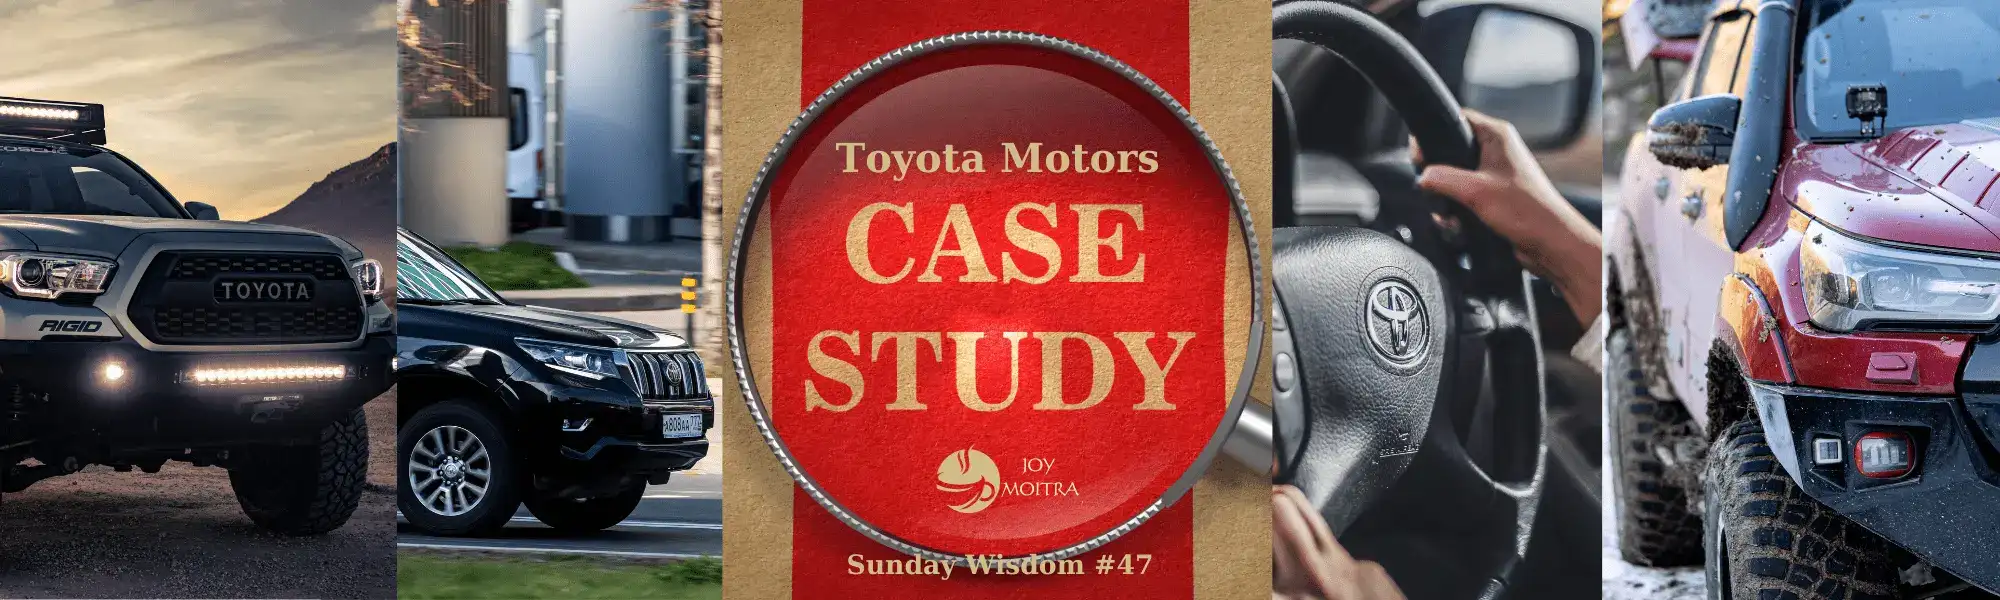 The Toyota Case Study Summary by Joy Moitra (Sunday Wisdom #47)